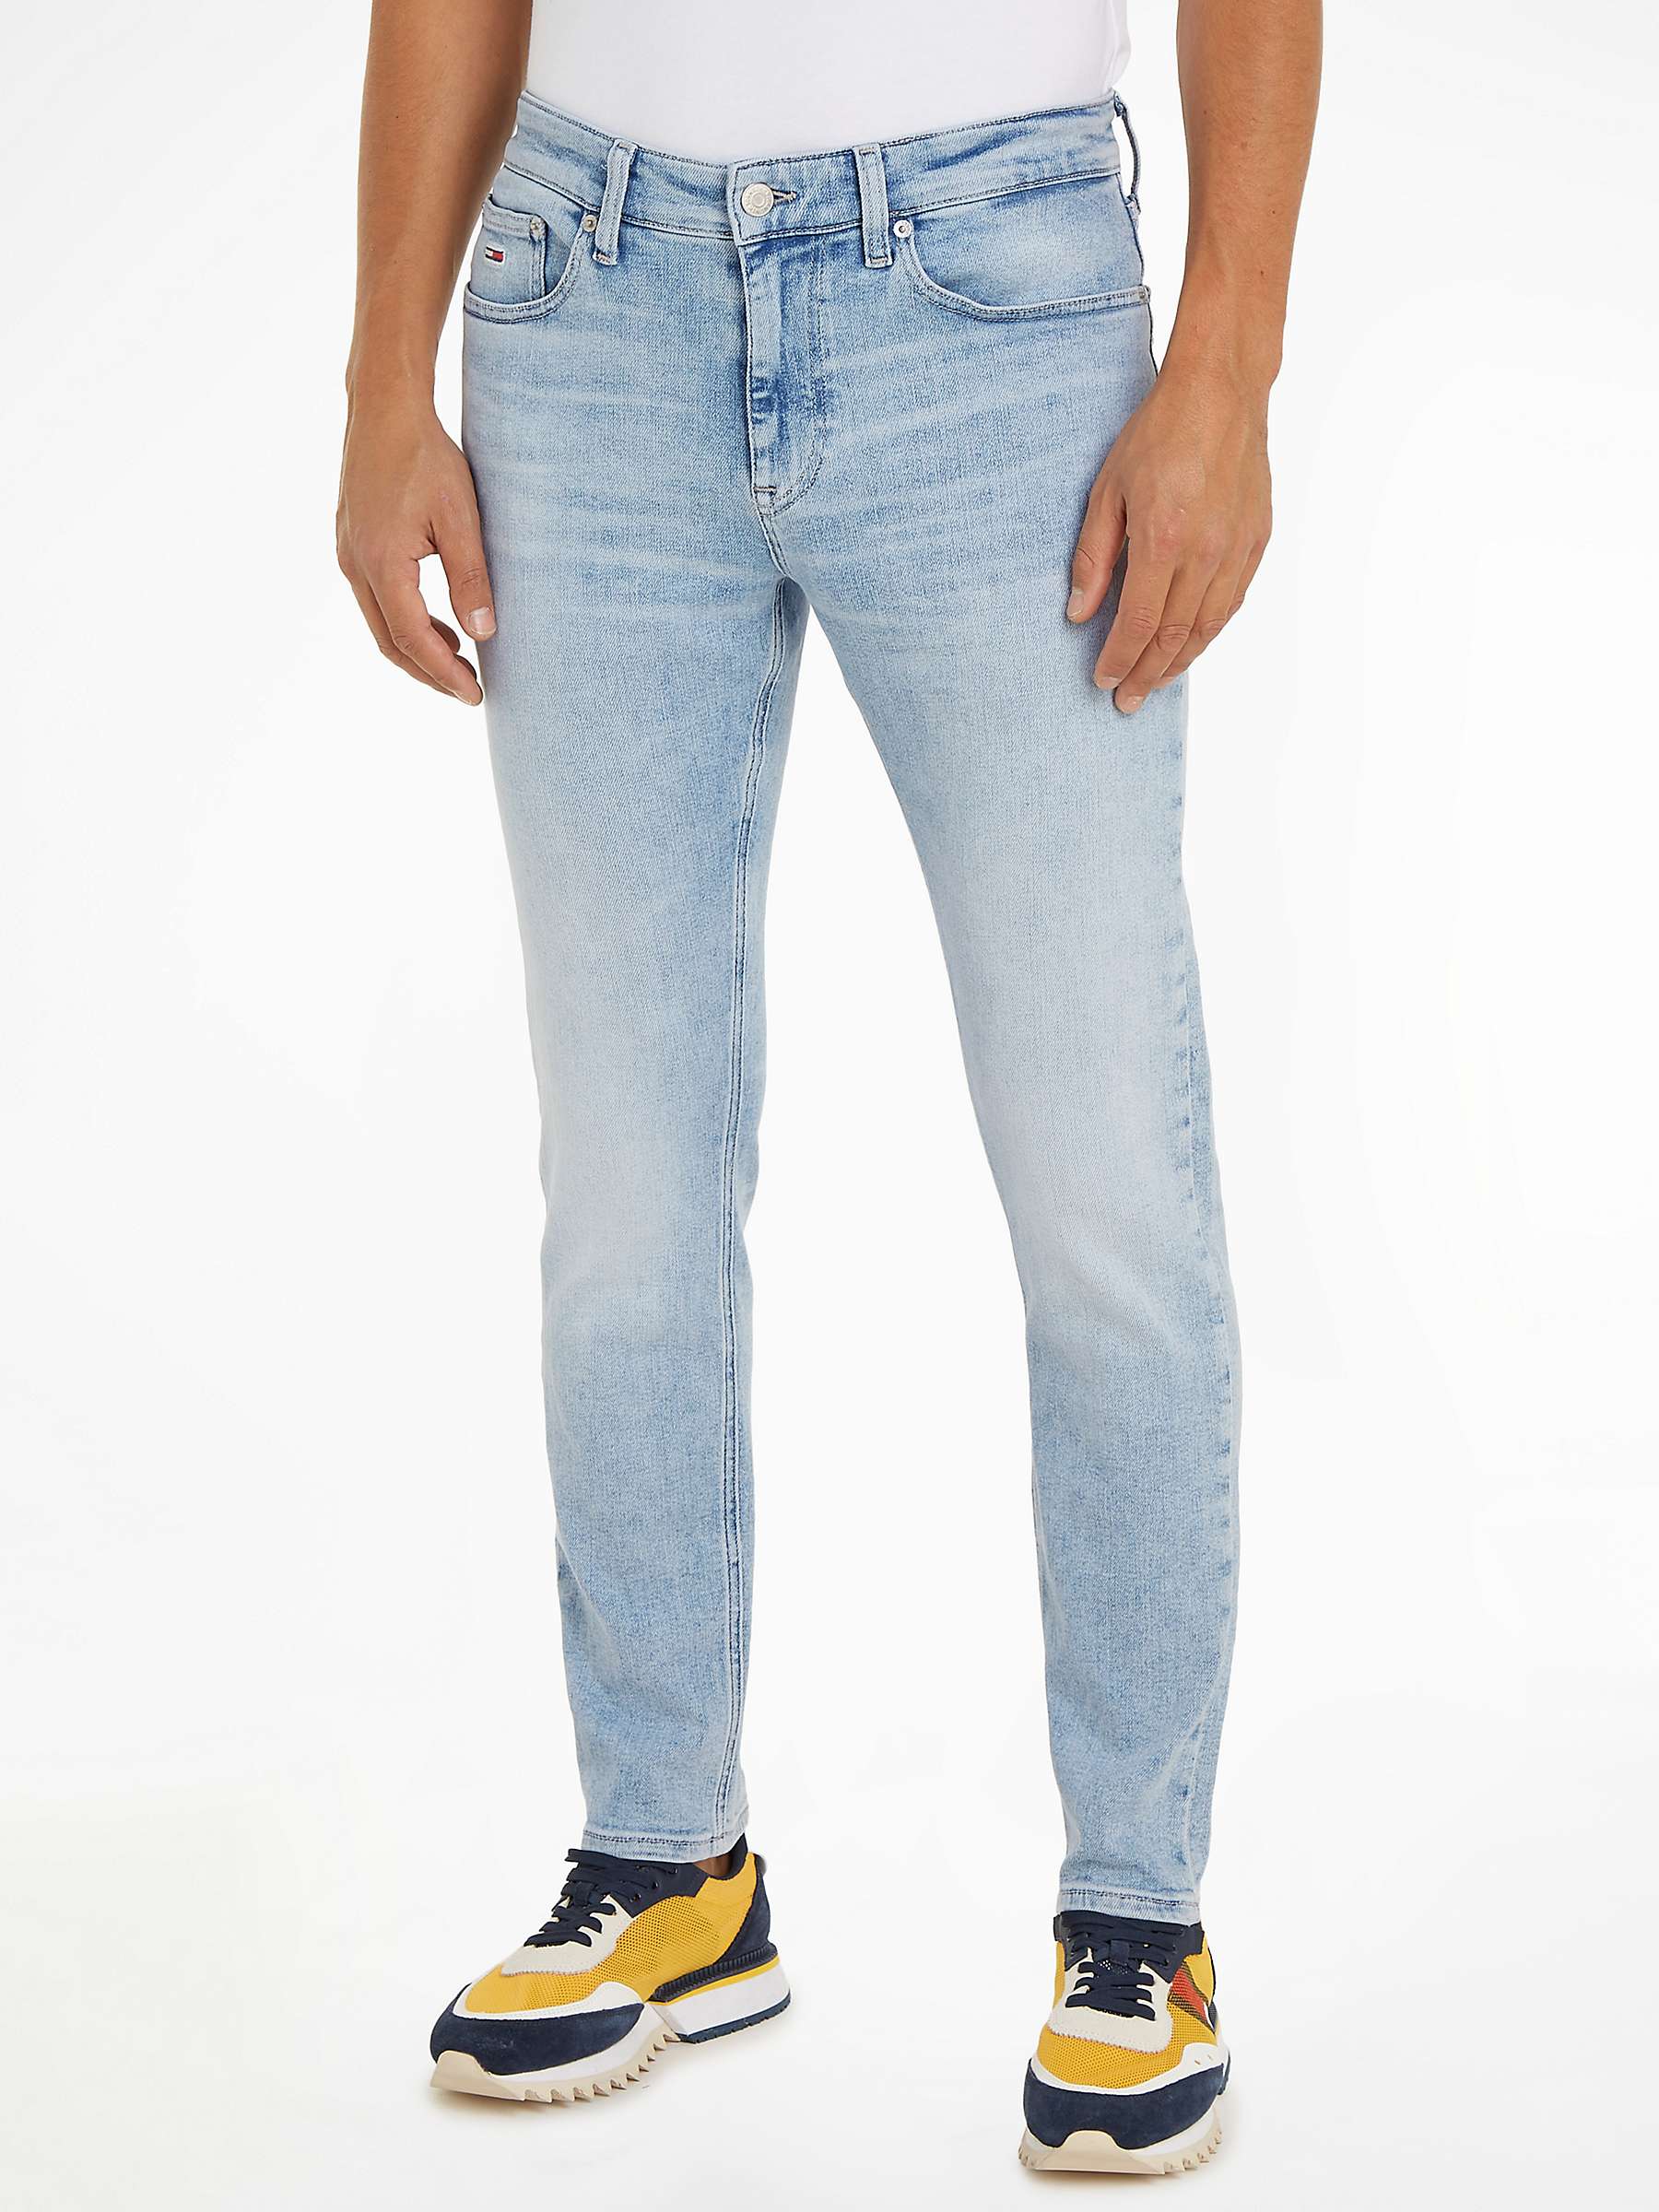 Buy Tommy Jeans Austin Slim Fit Jeans, Denim Light Online at johnlewis.com